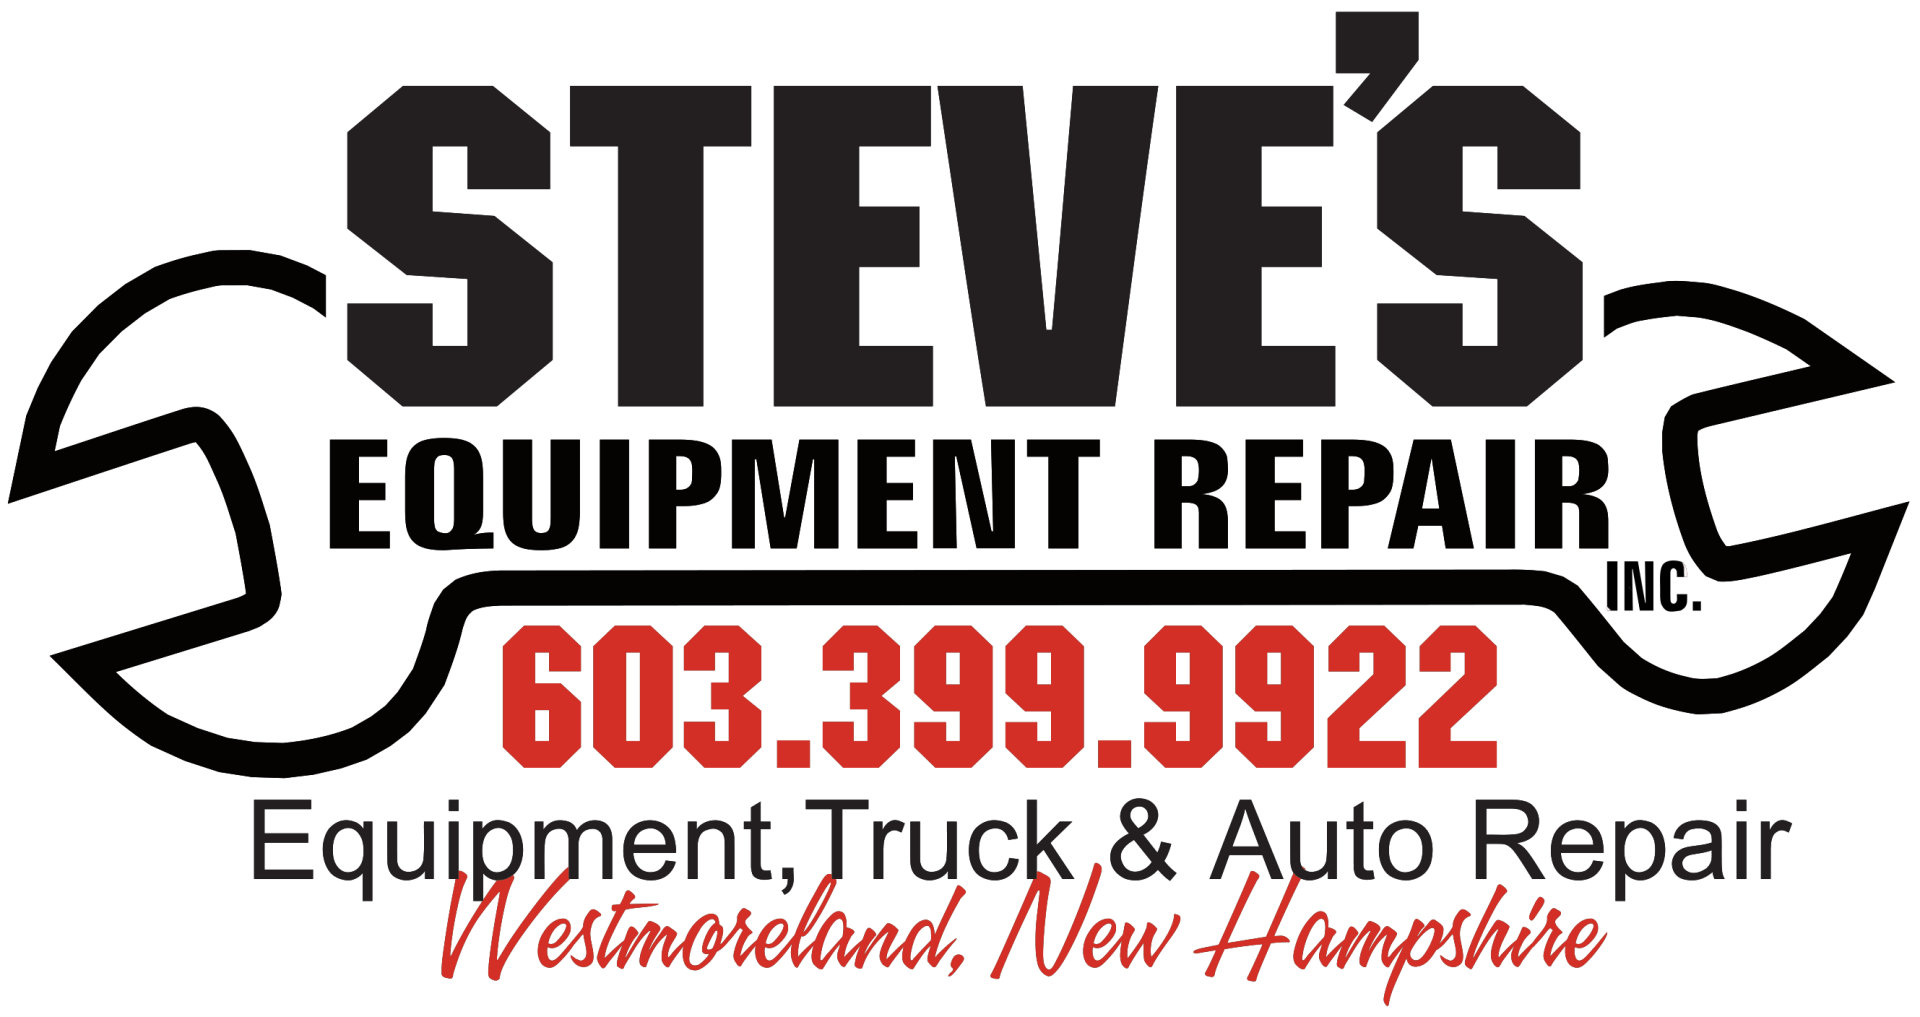 Steve's Equipment Repair in Westmoreland, NH